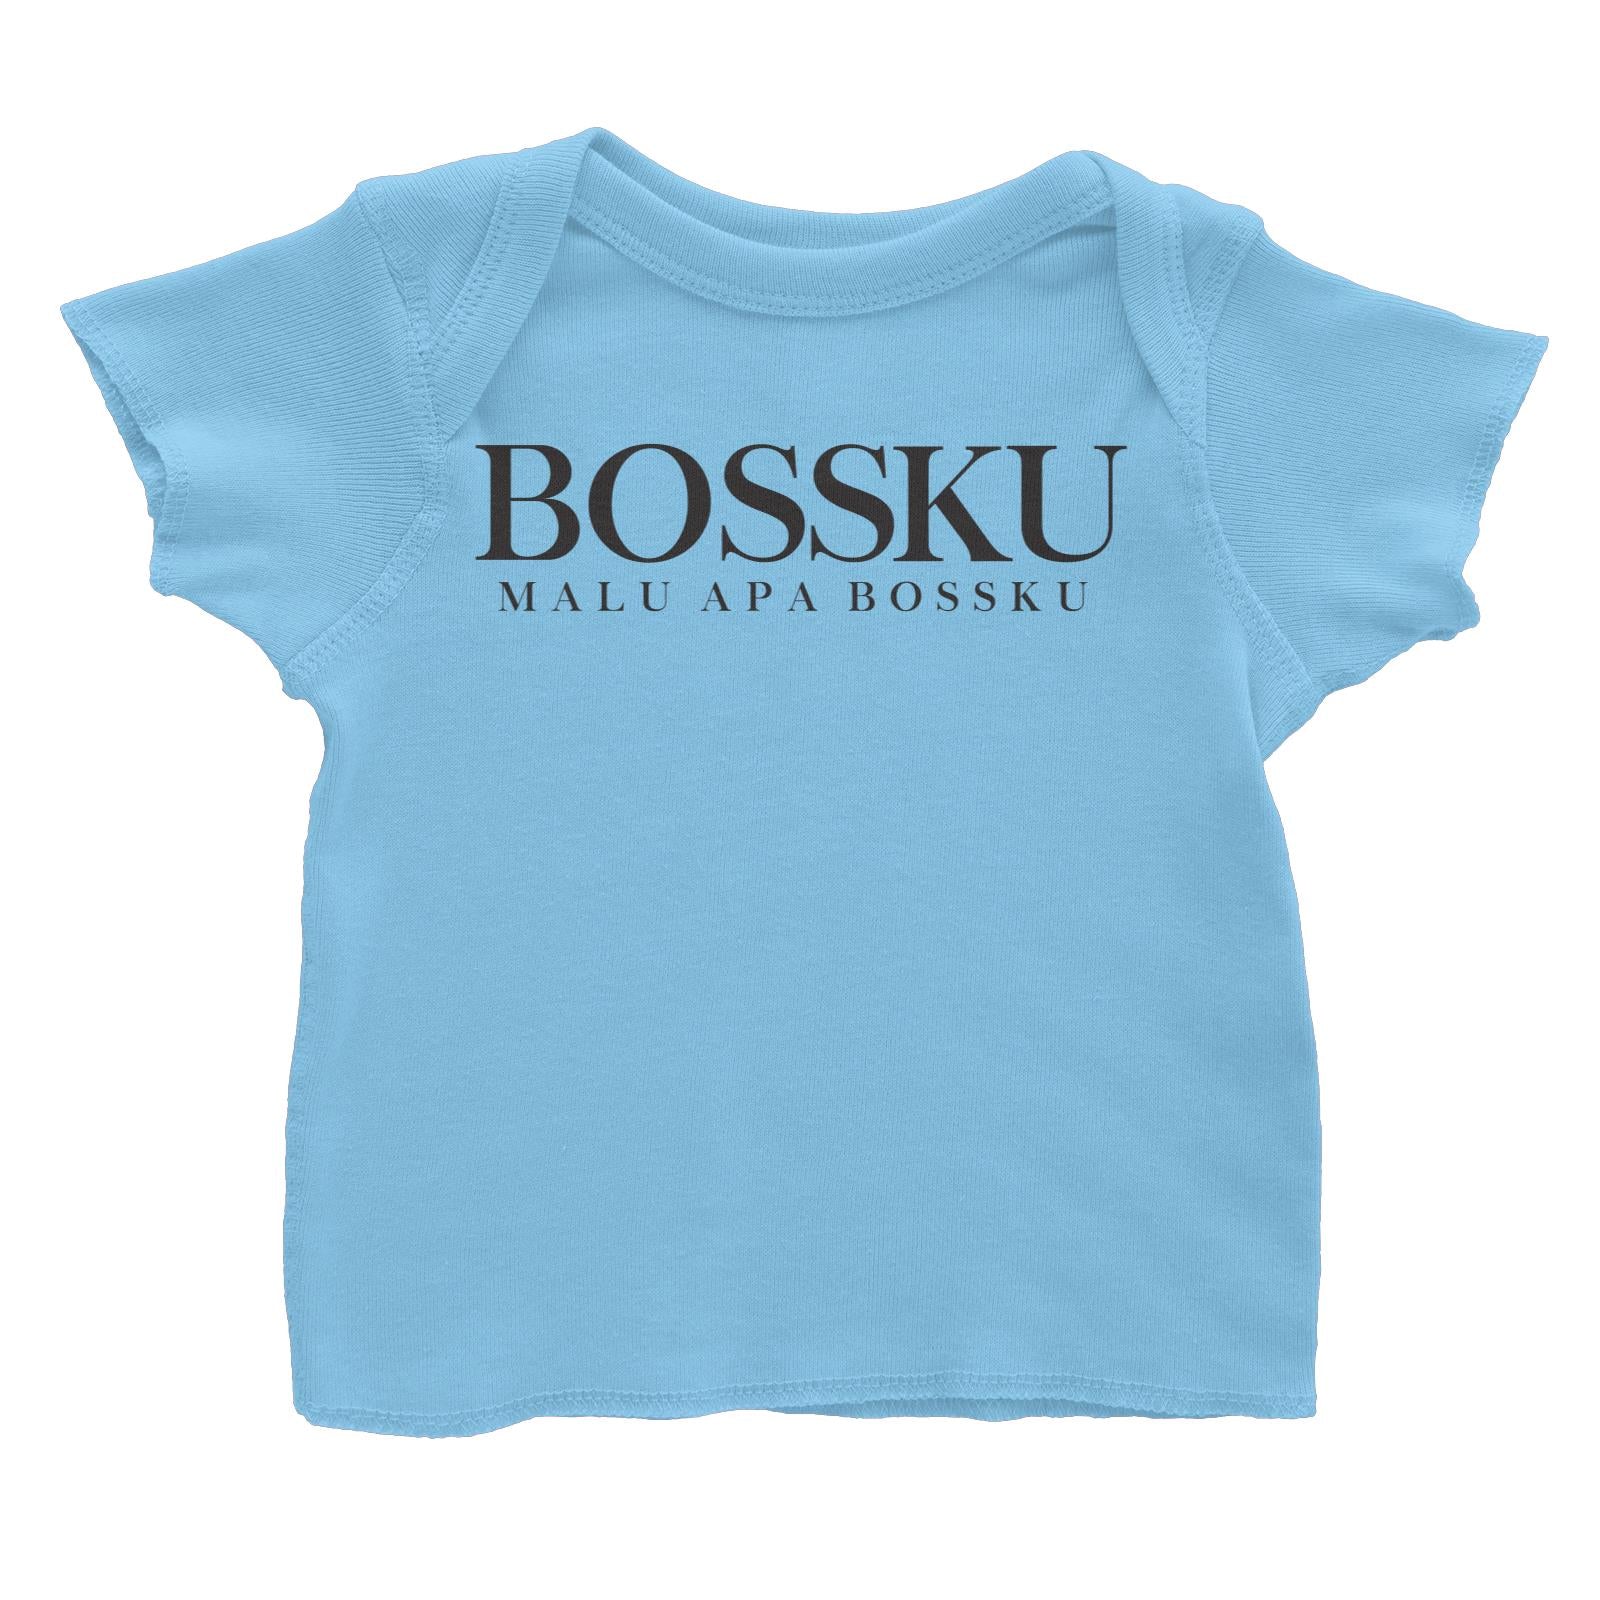 Slang Statement Bossku Malu Apa Bossku Baby T-Shirt